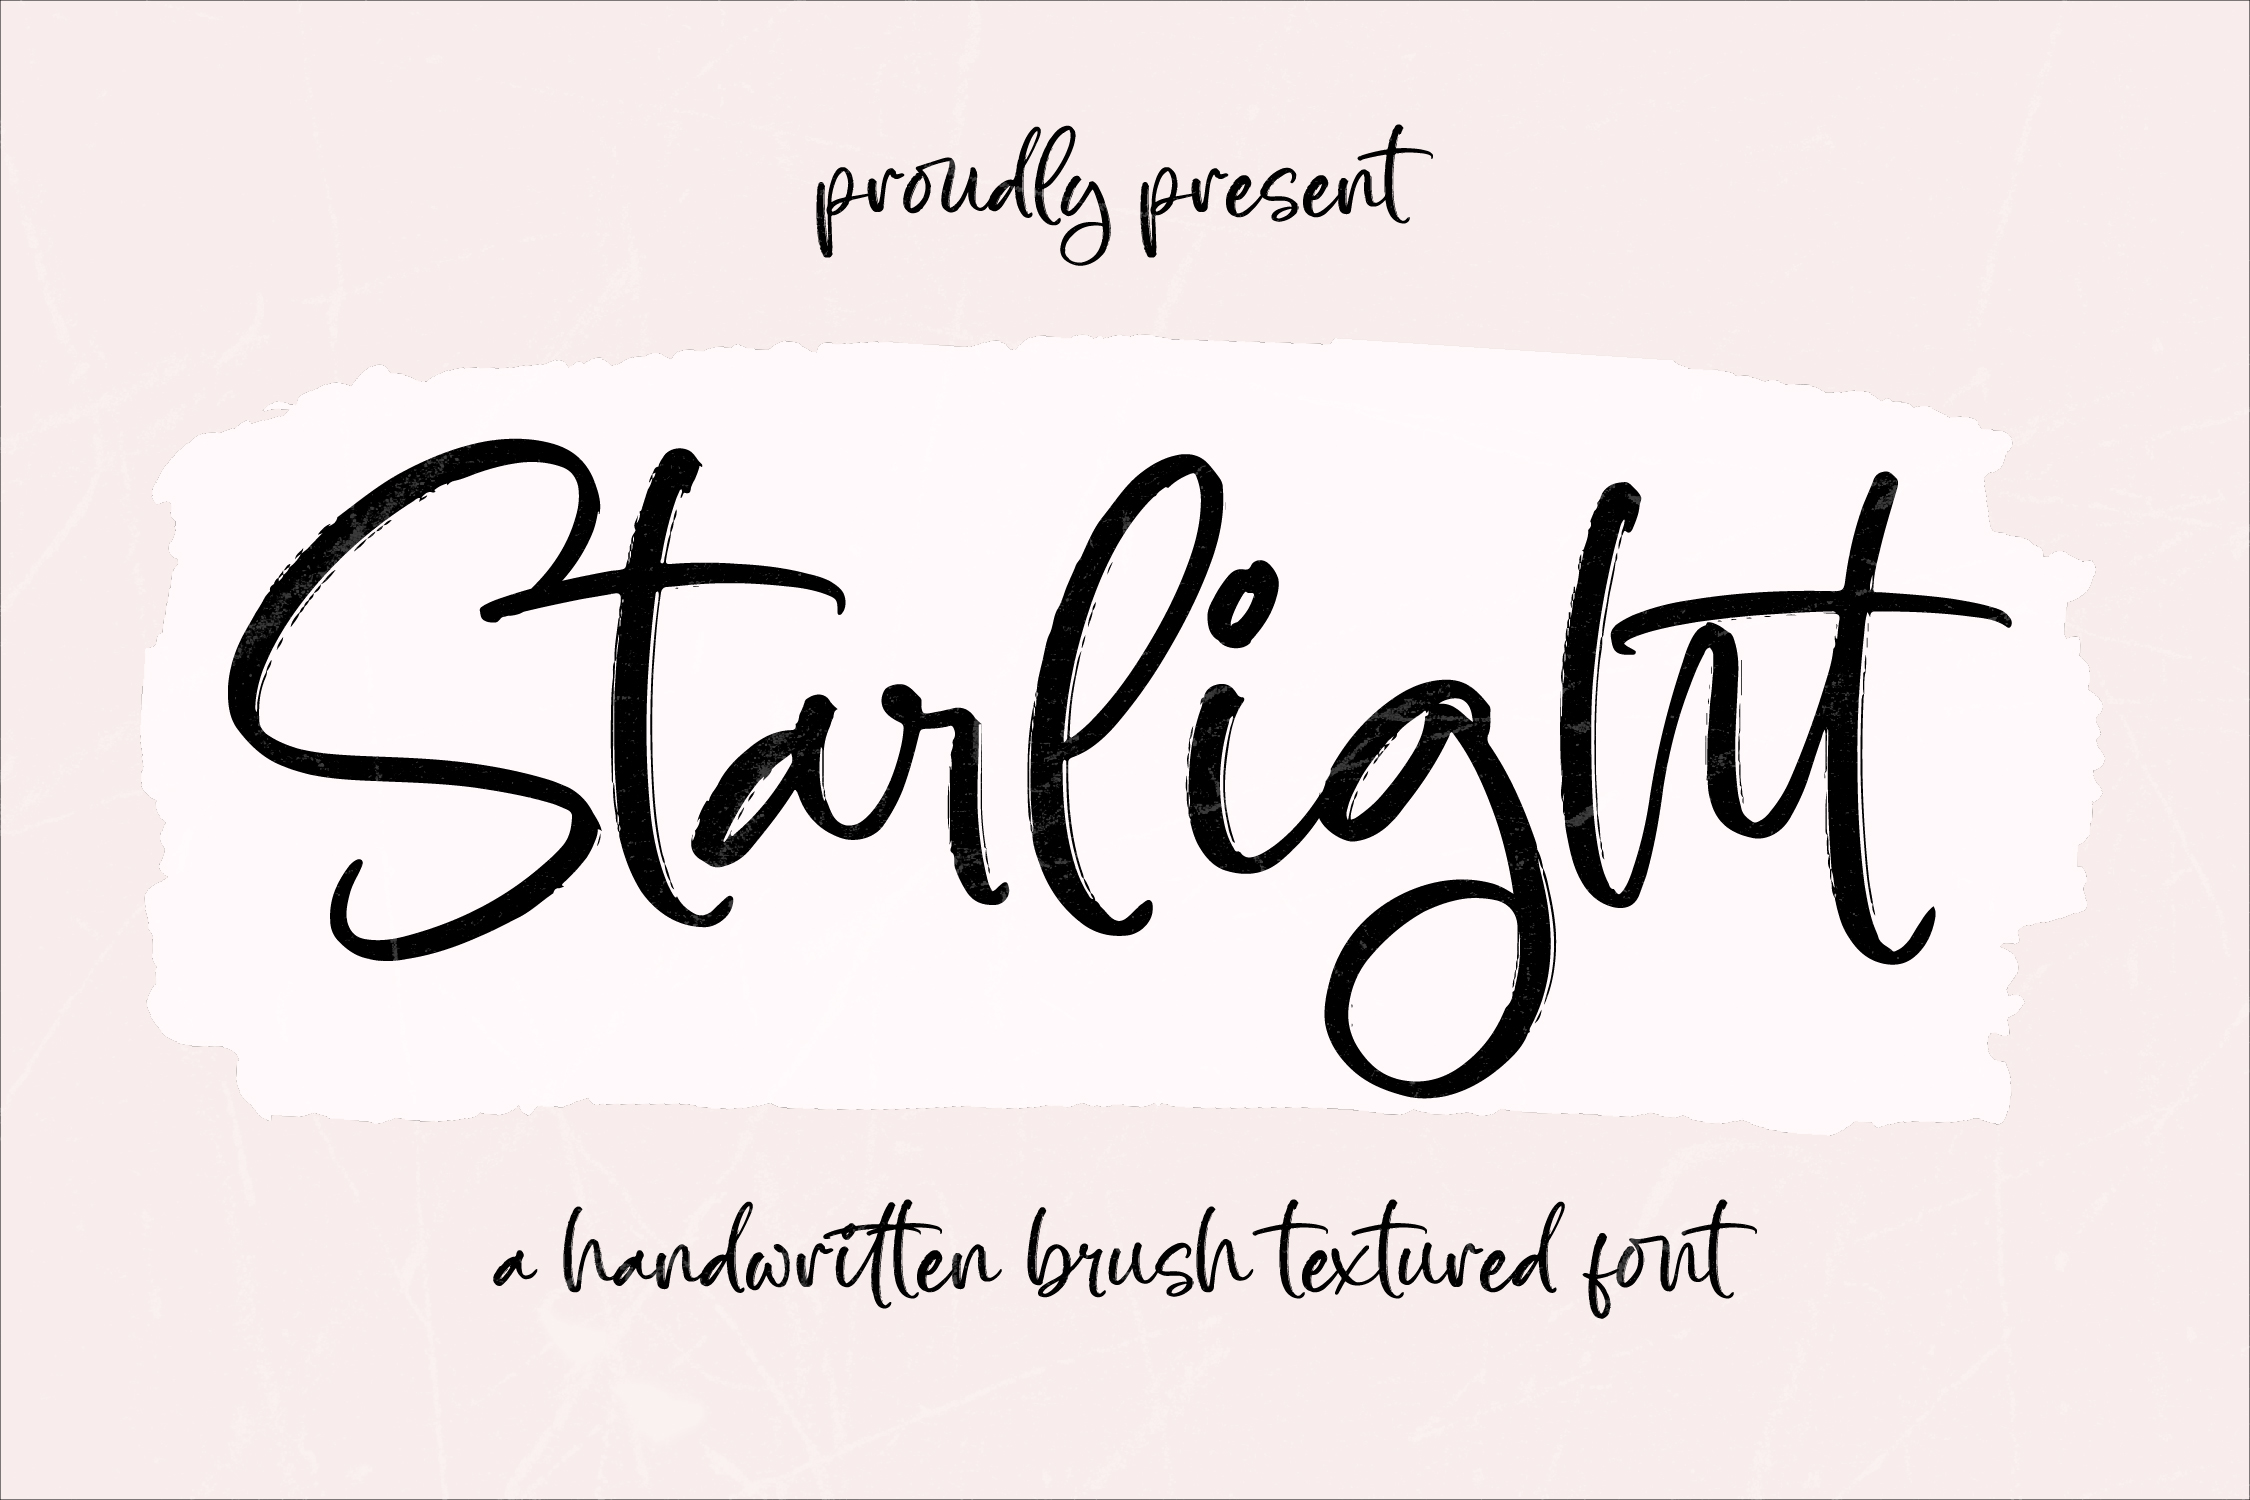 Starlight Script Font